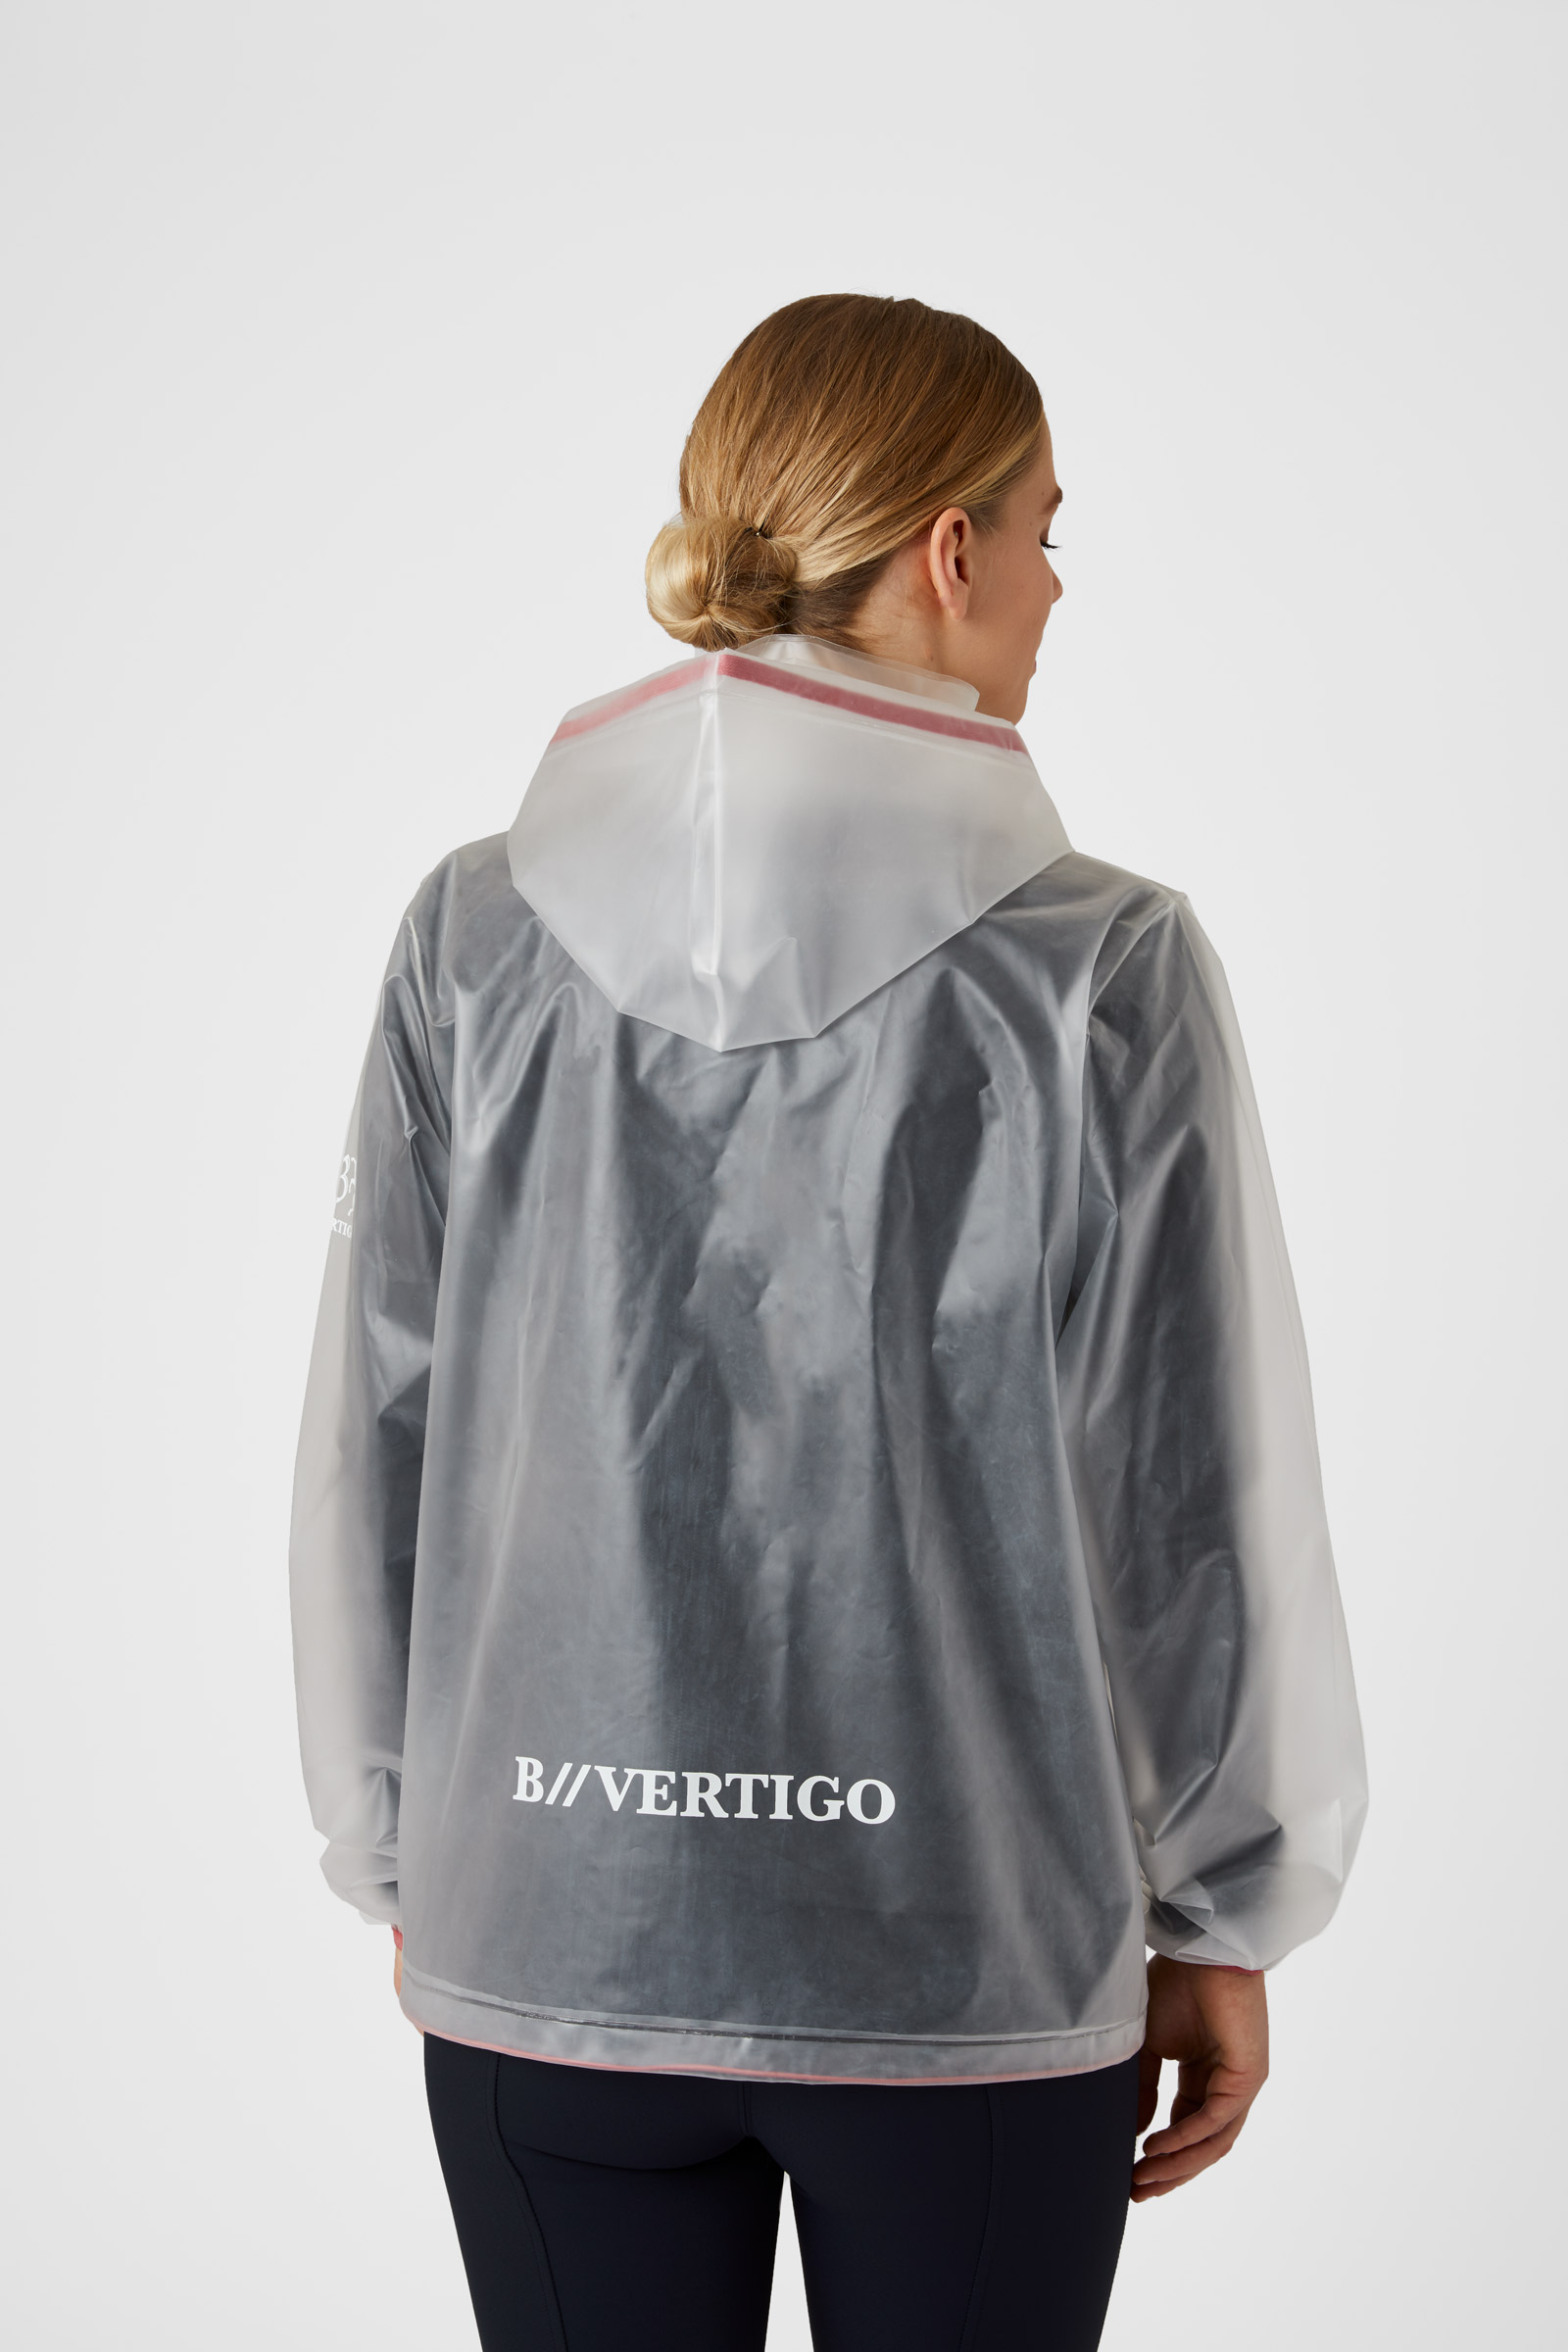 NUEVO y elegante impermeable transparente con capucha extraíble Chubasquero  transparente para mujer. Ropa impermeable perfecta resistente al viento -   España